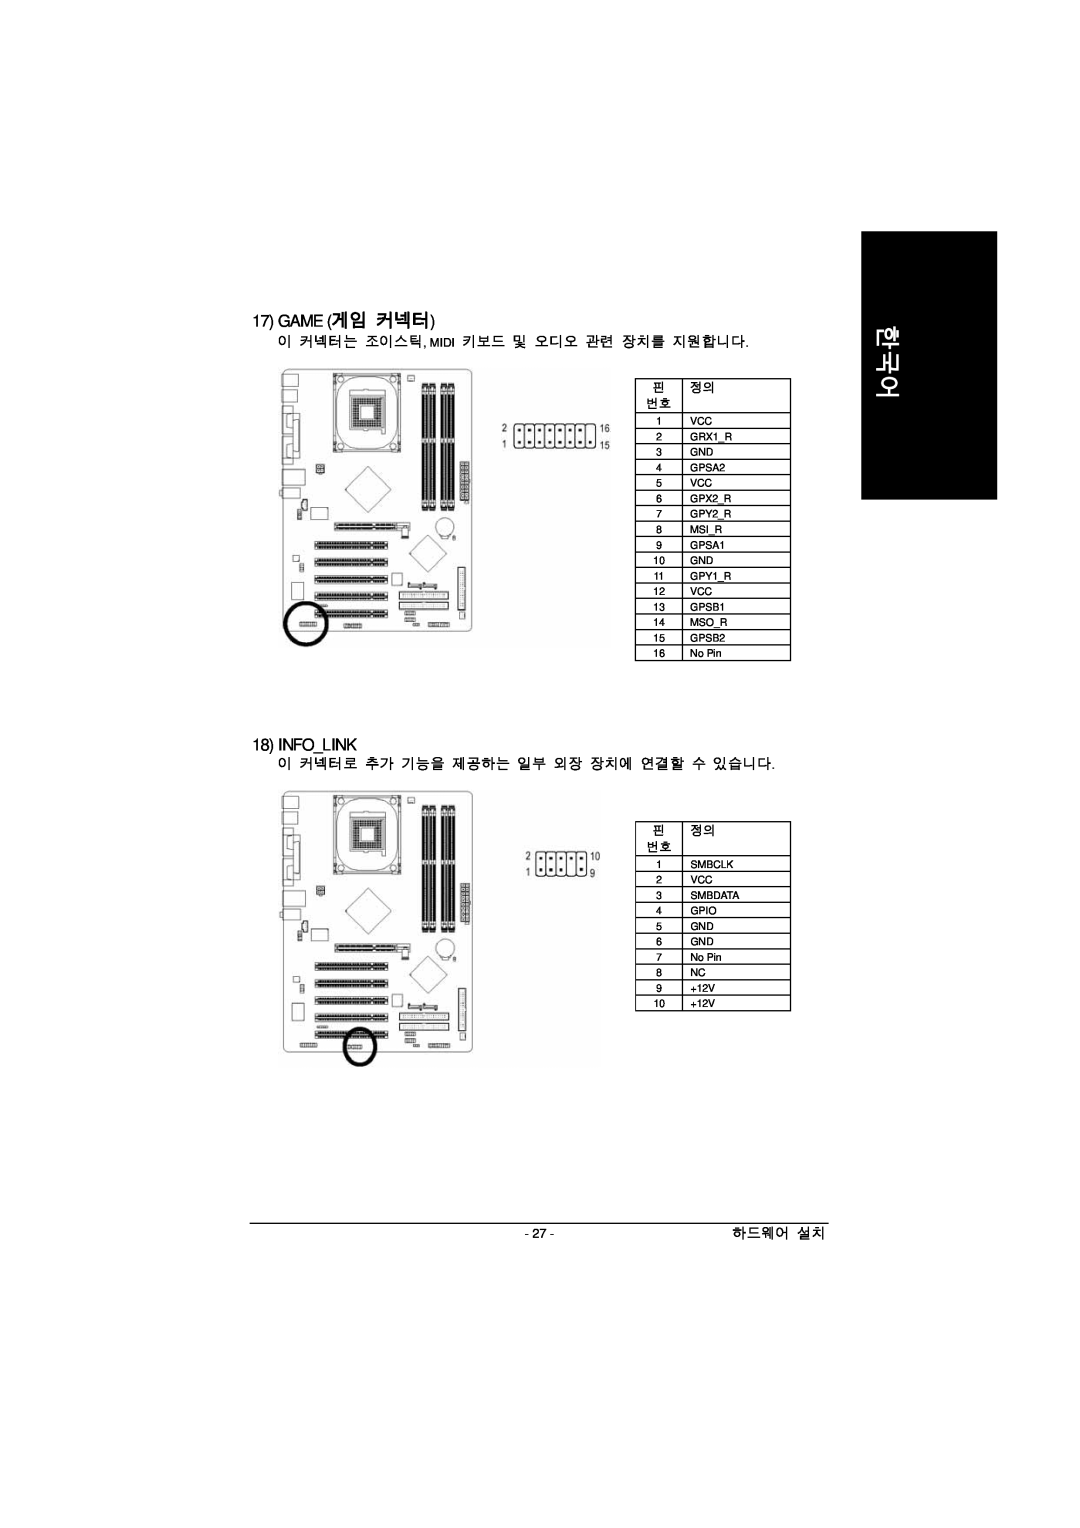 Intel GA-8IPE1000 manual Game 게임 커넥터, Infolink 